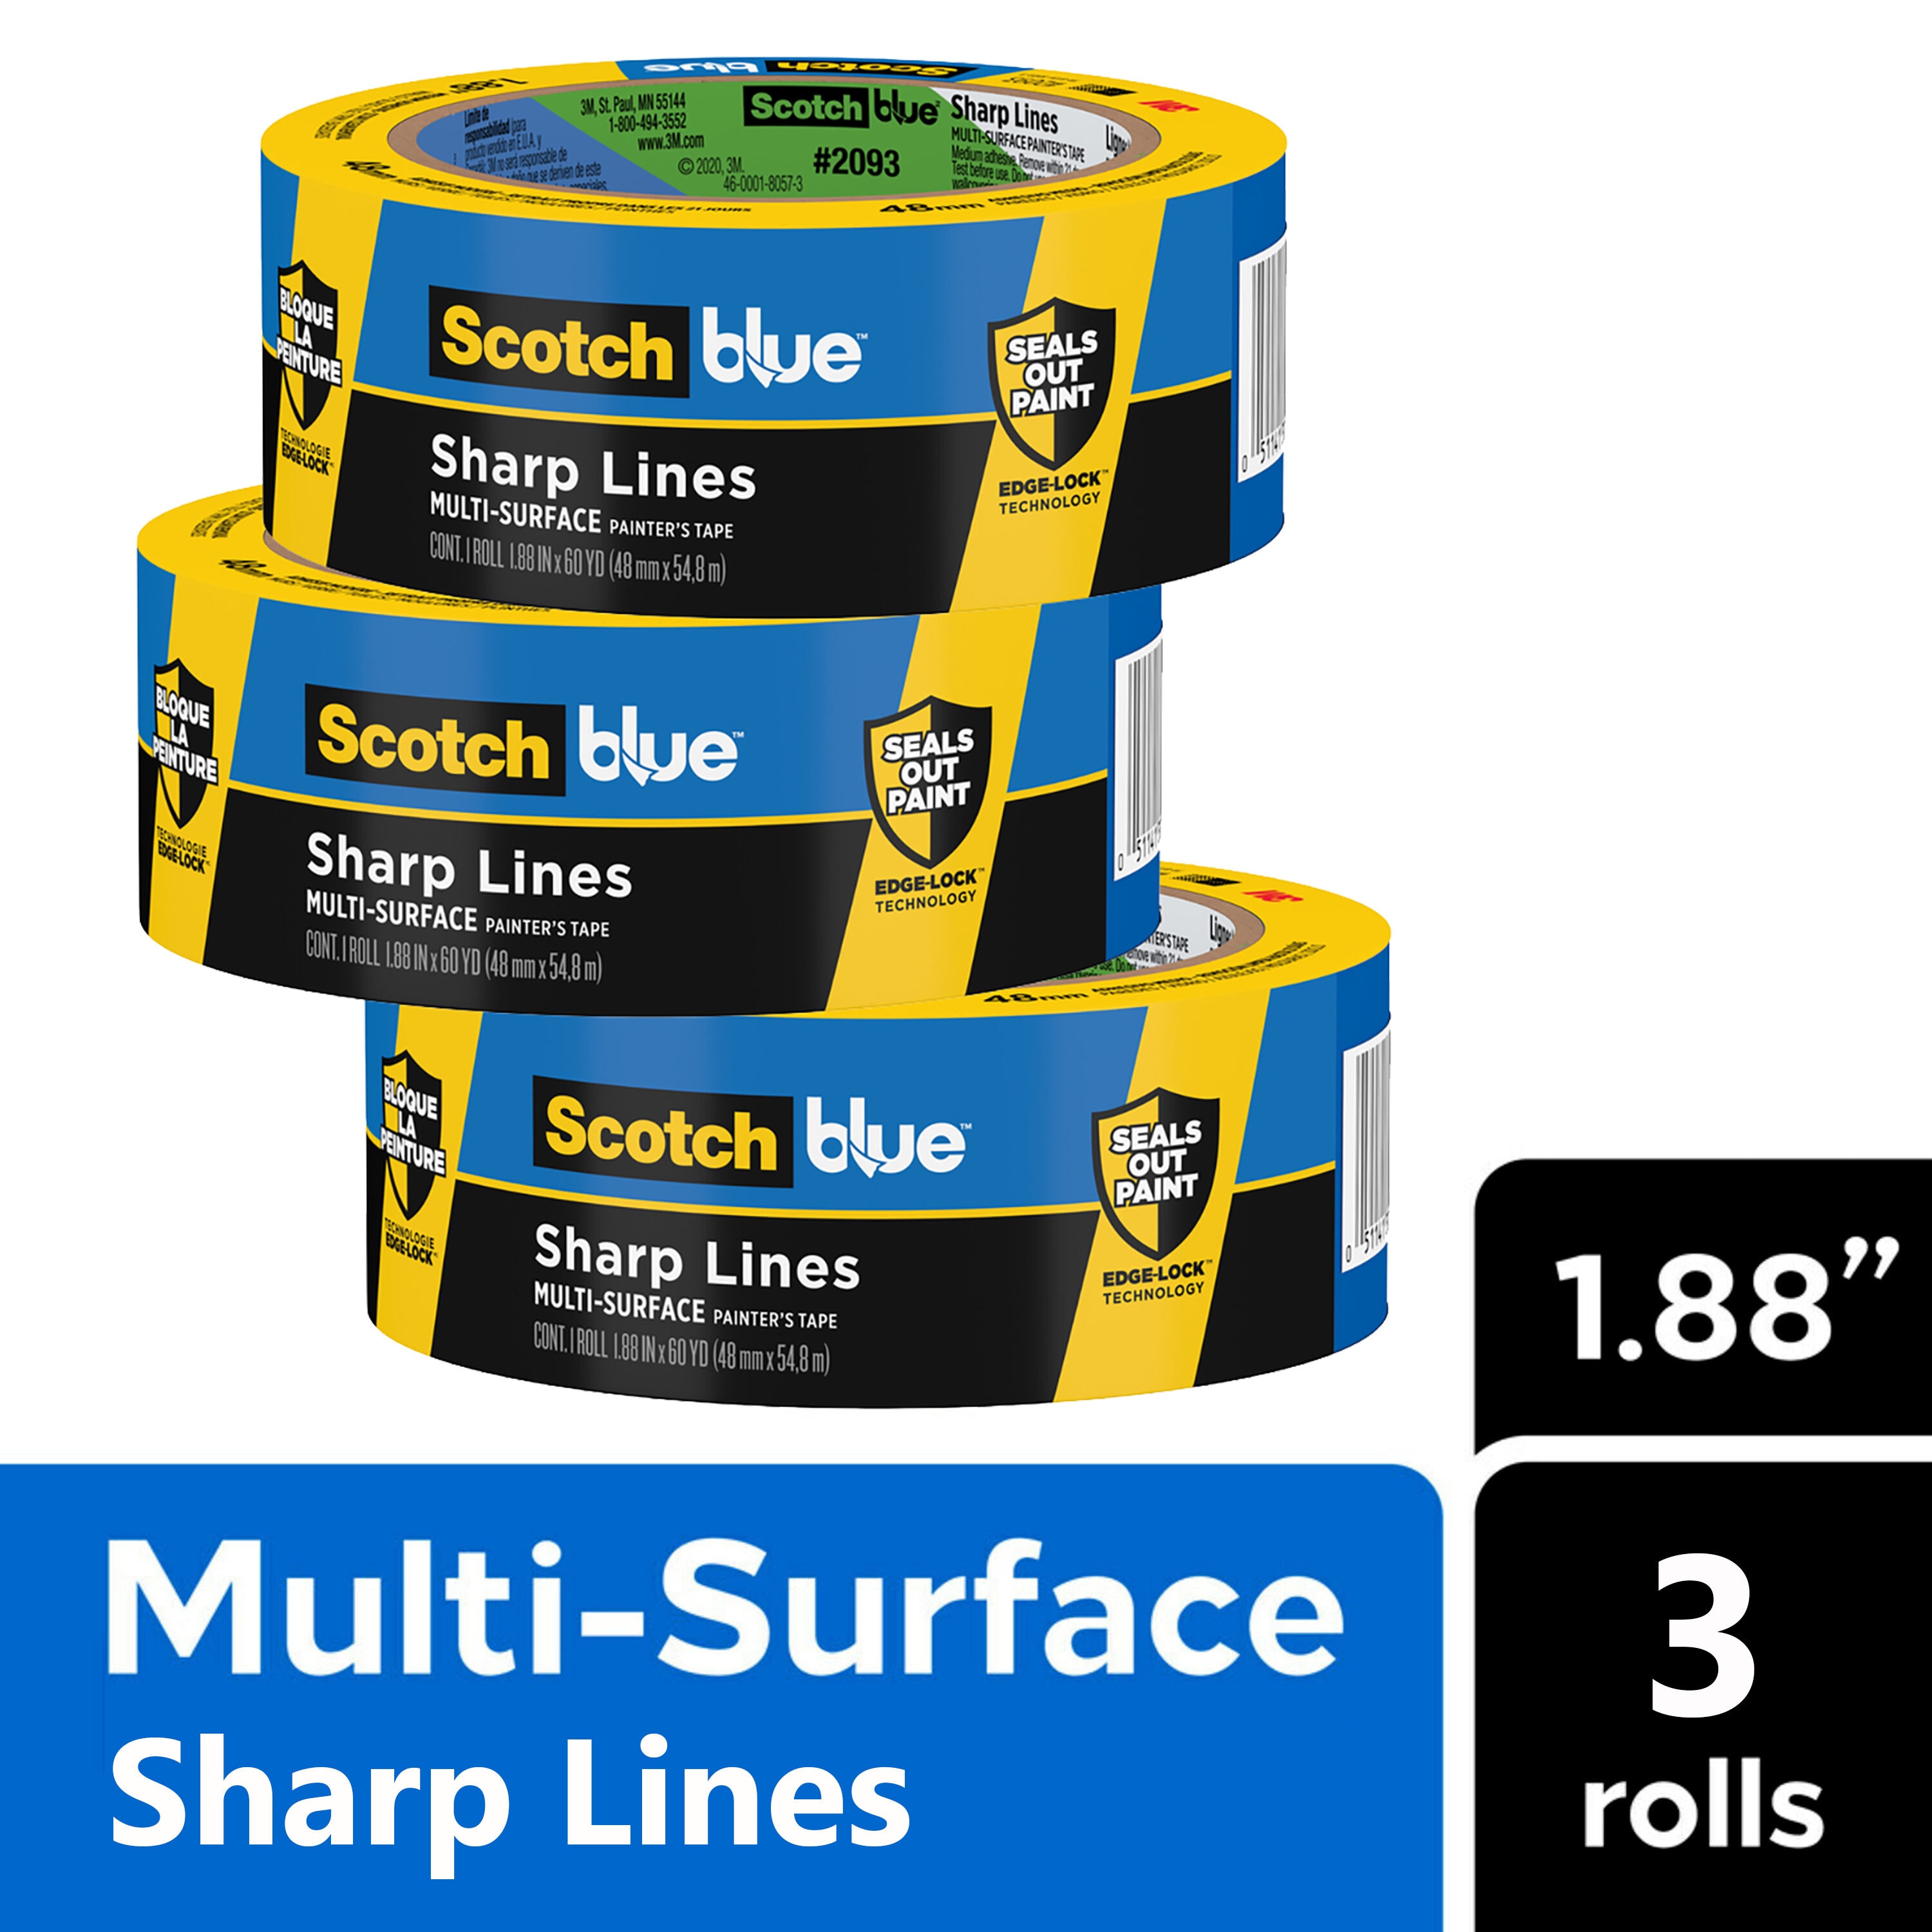 ScotchBlue Painter's Tape for Multiple Surfaces